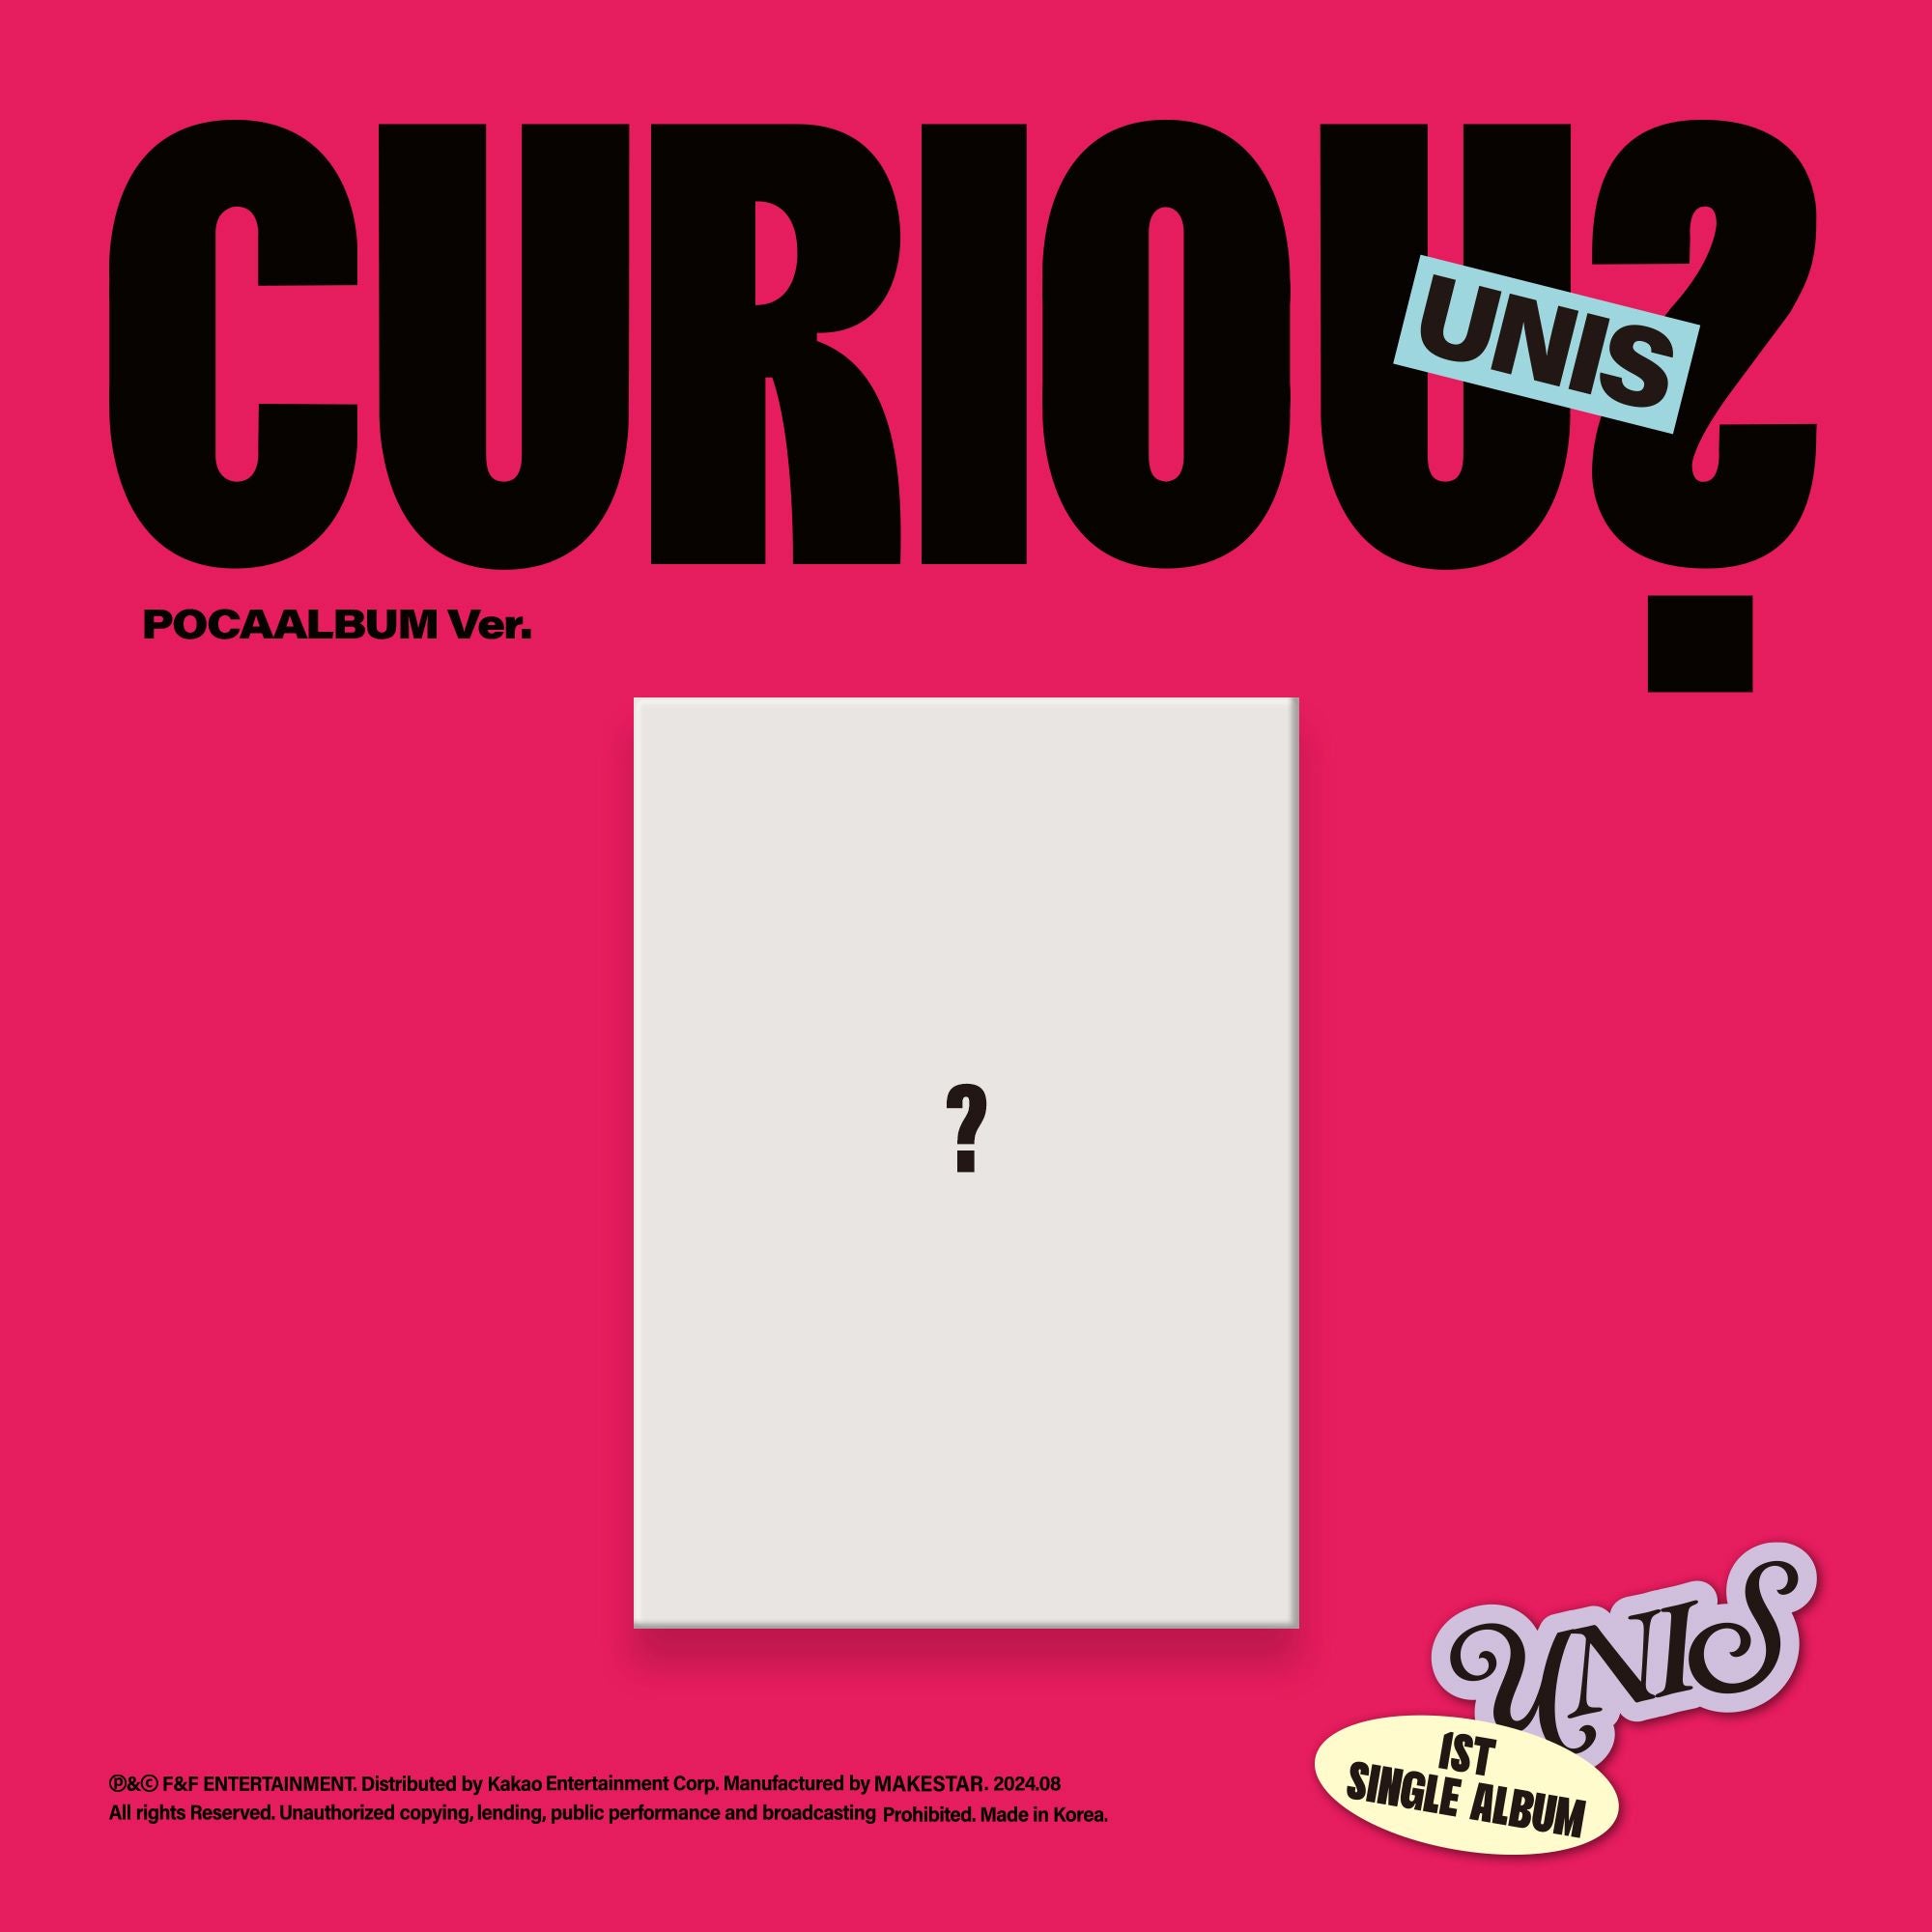 UNIS- 1st Single Album [CURIOUS] Pocaalbum Ver.